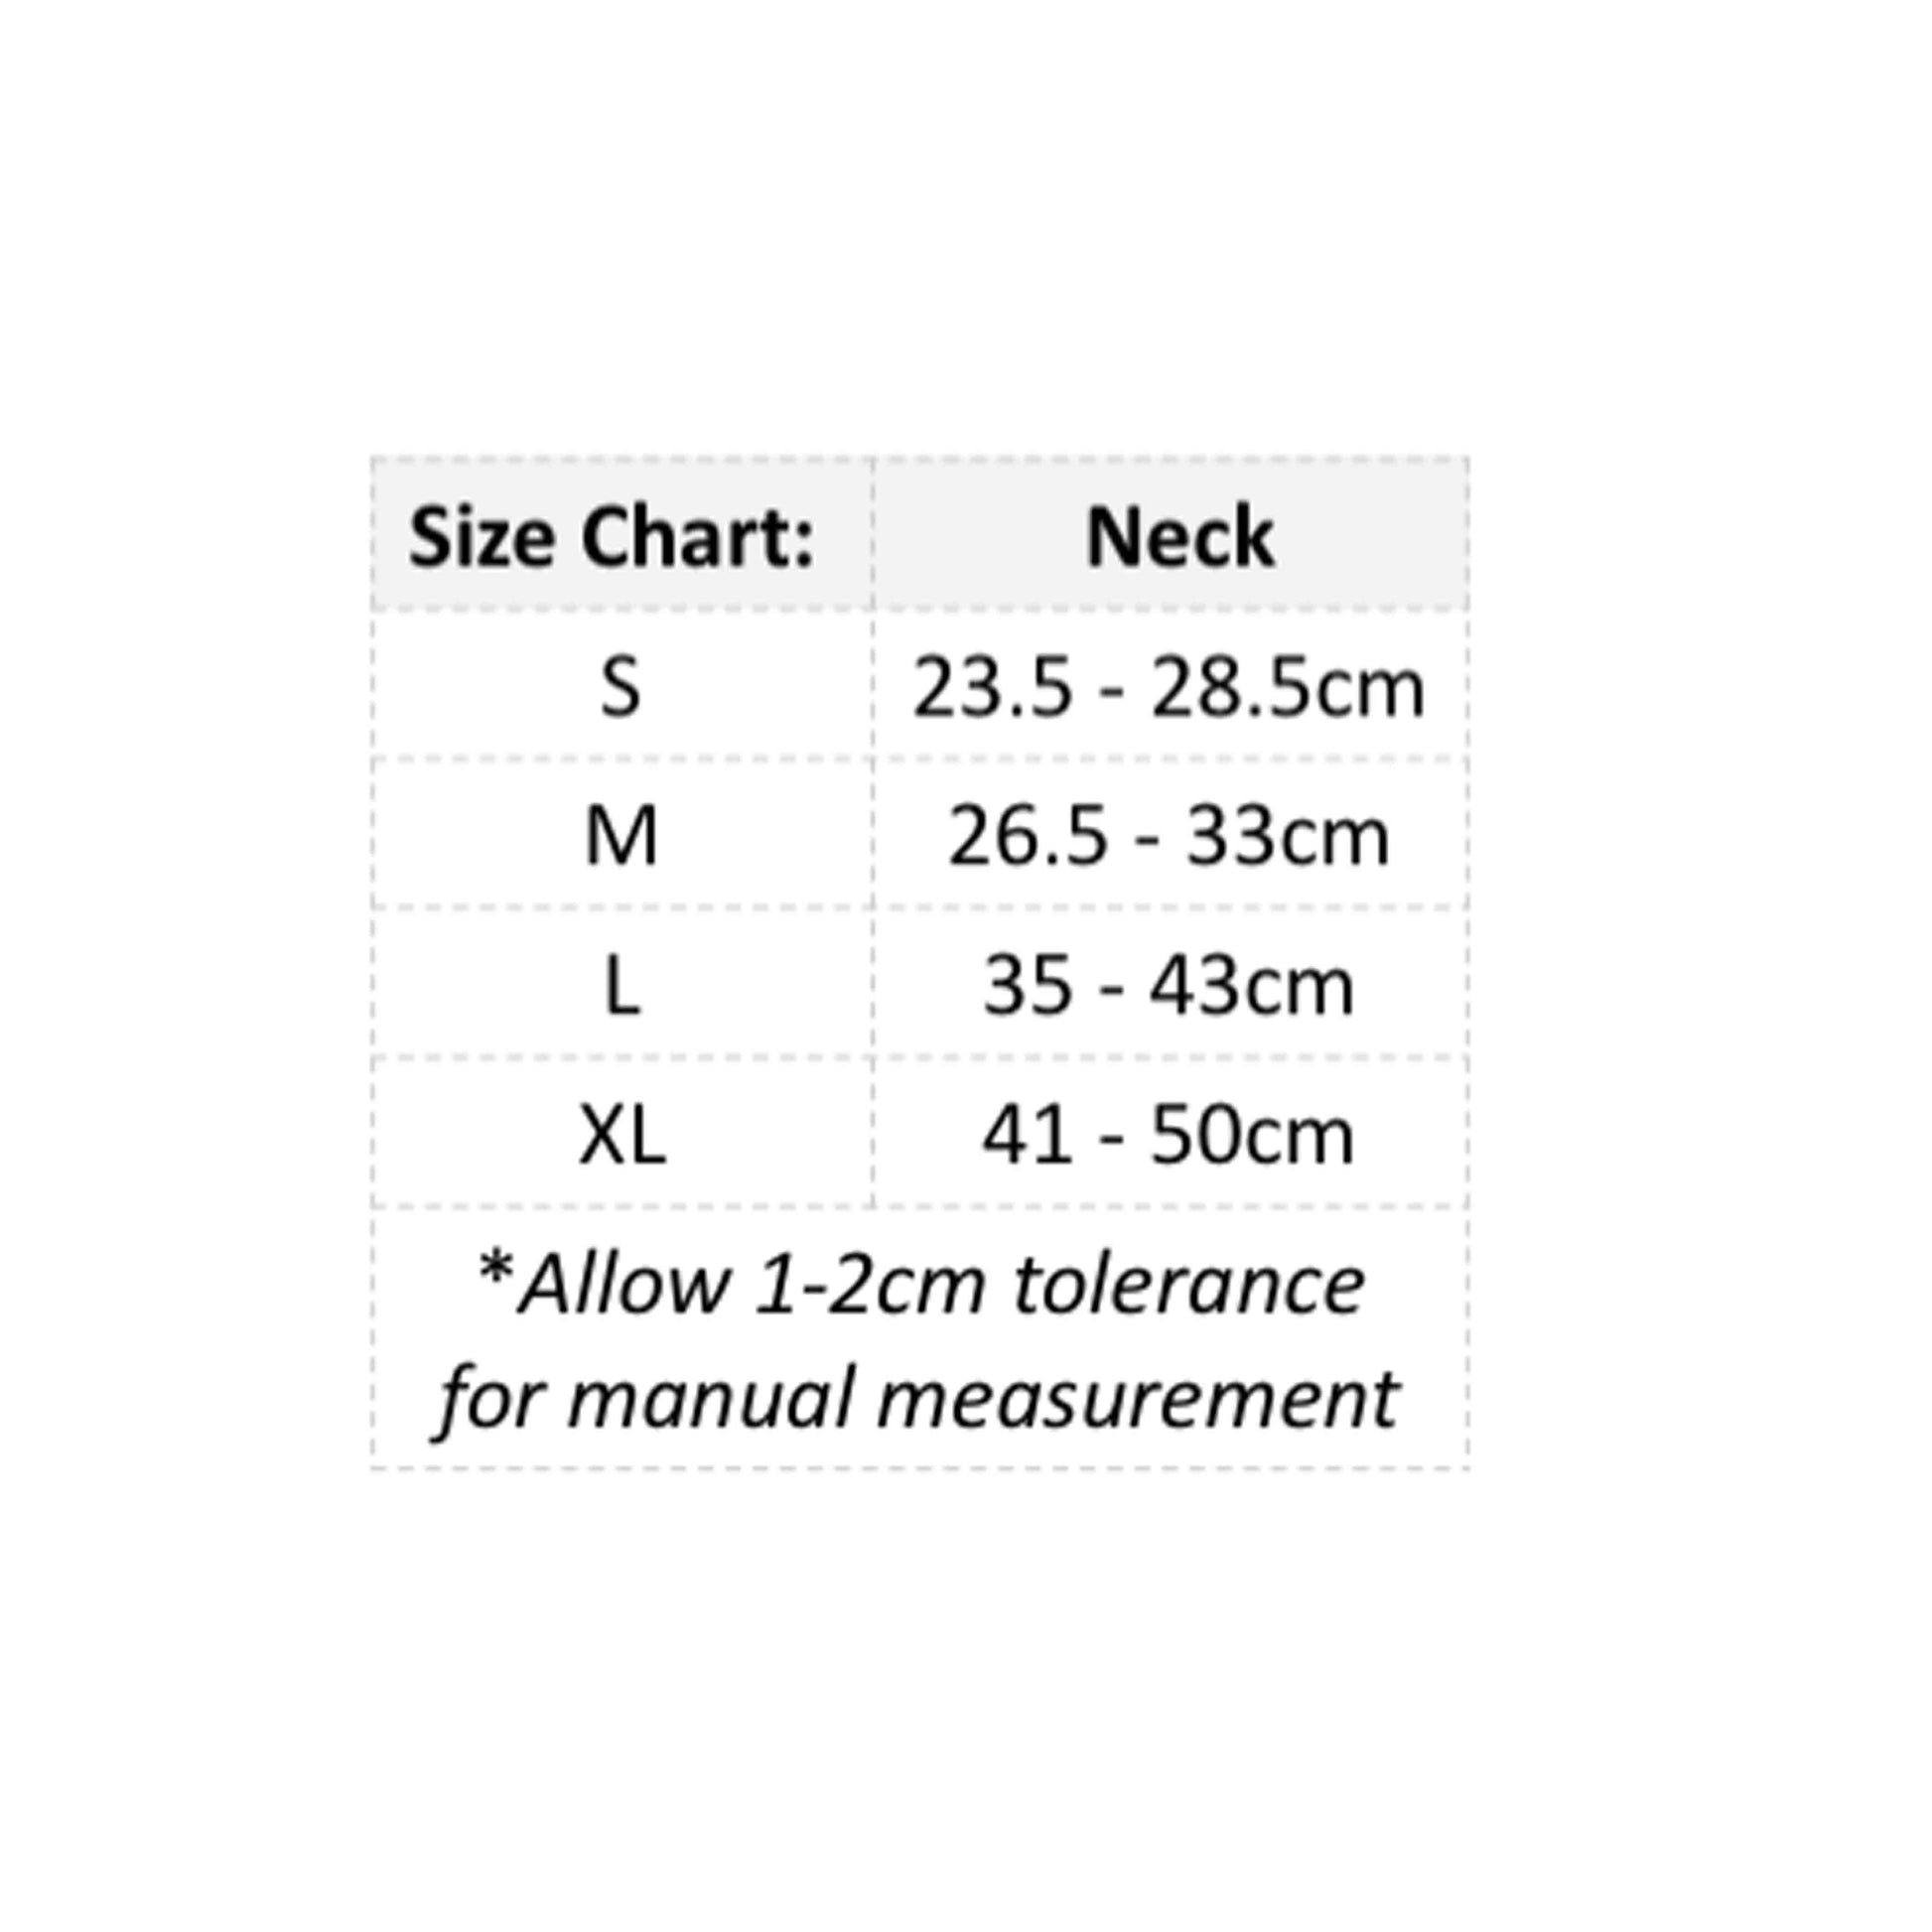 A size chart for a Bandana collar